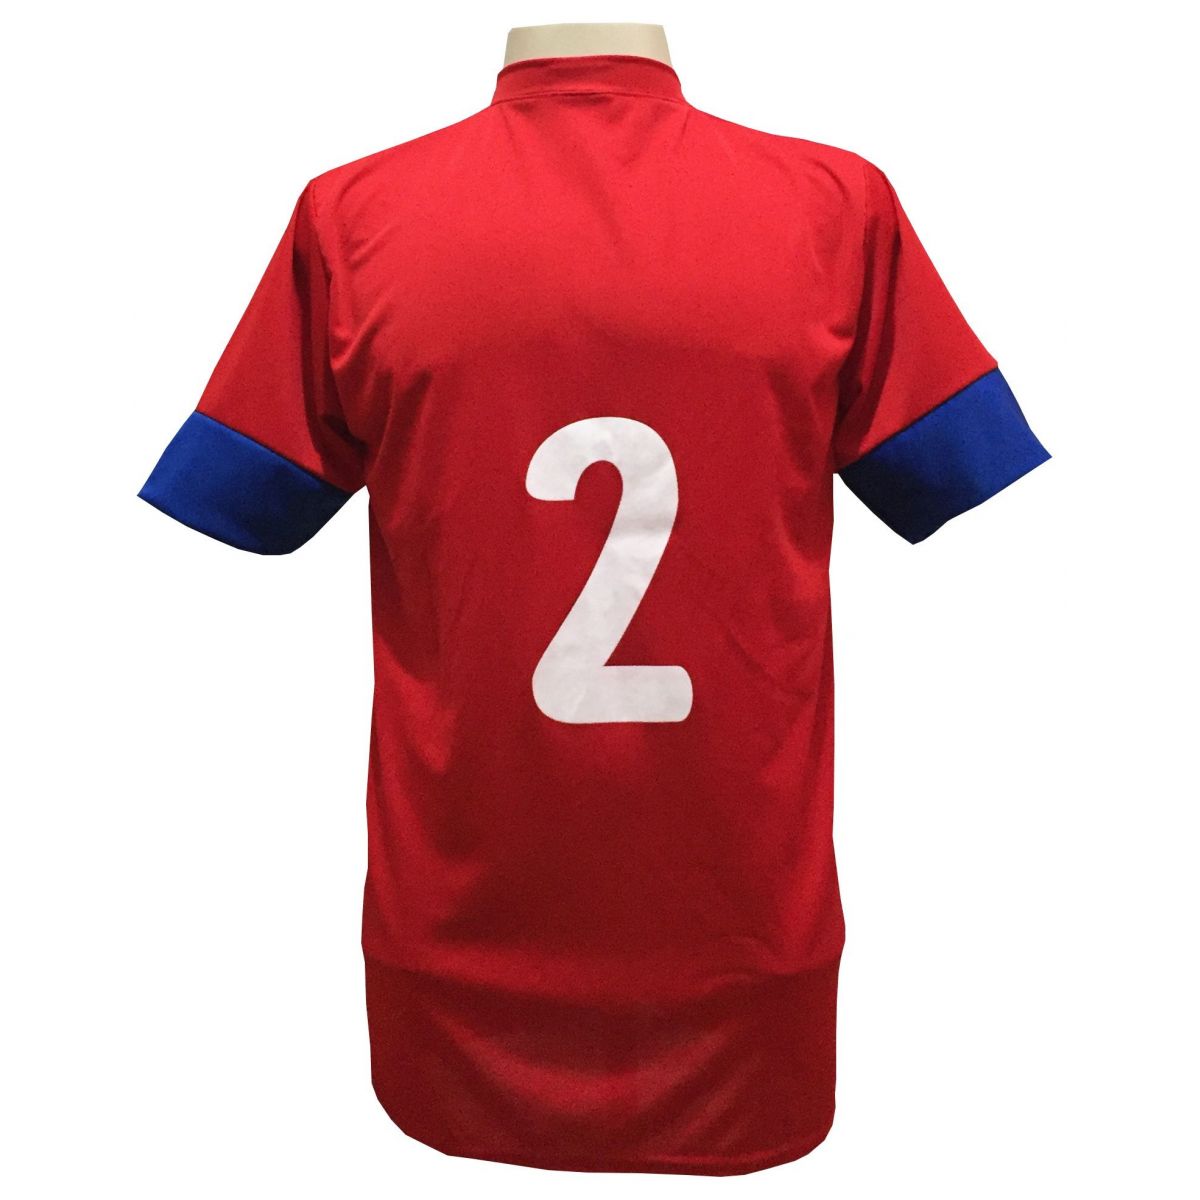 Uniforme Esportivo com 18 camisas modelo Columbus Vermelho/Royal + 18 calções modelo Madrid Royal + Brindes